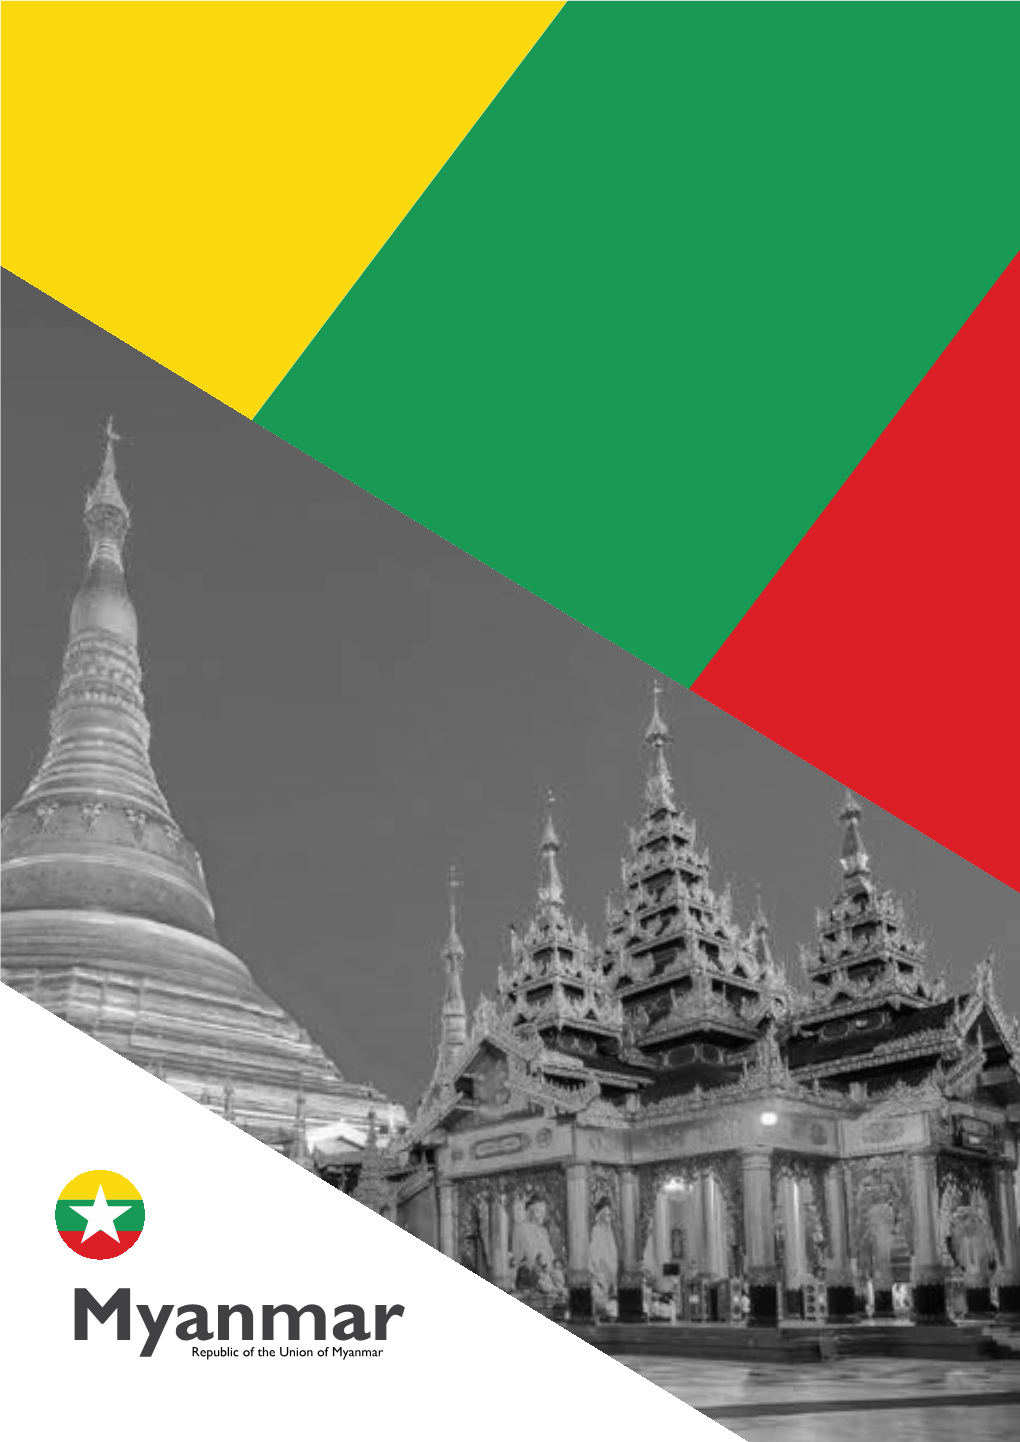 Myanmarrepublic of the Union of Myanmar Geography